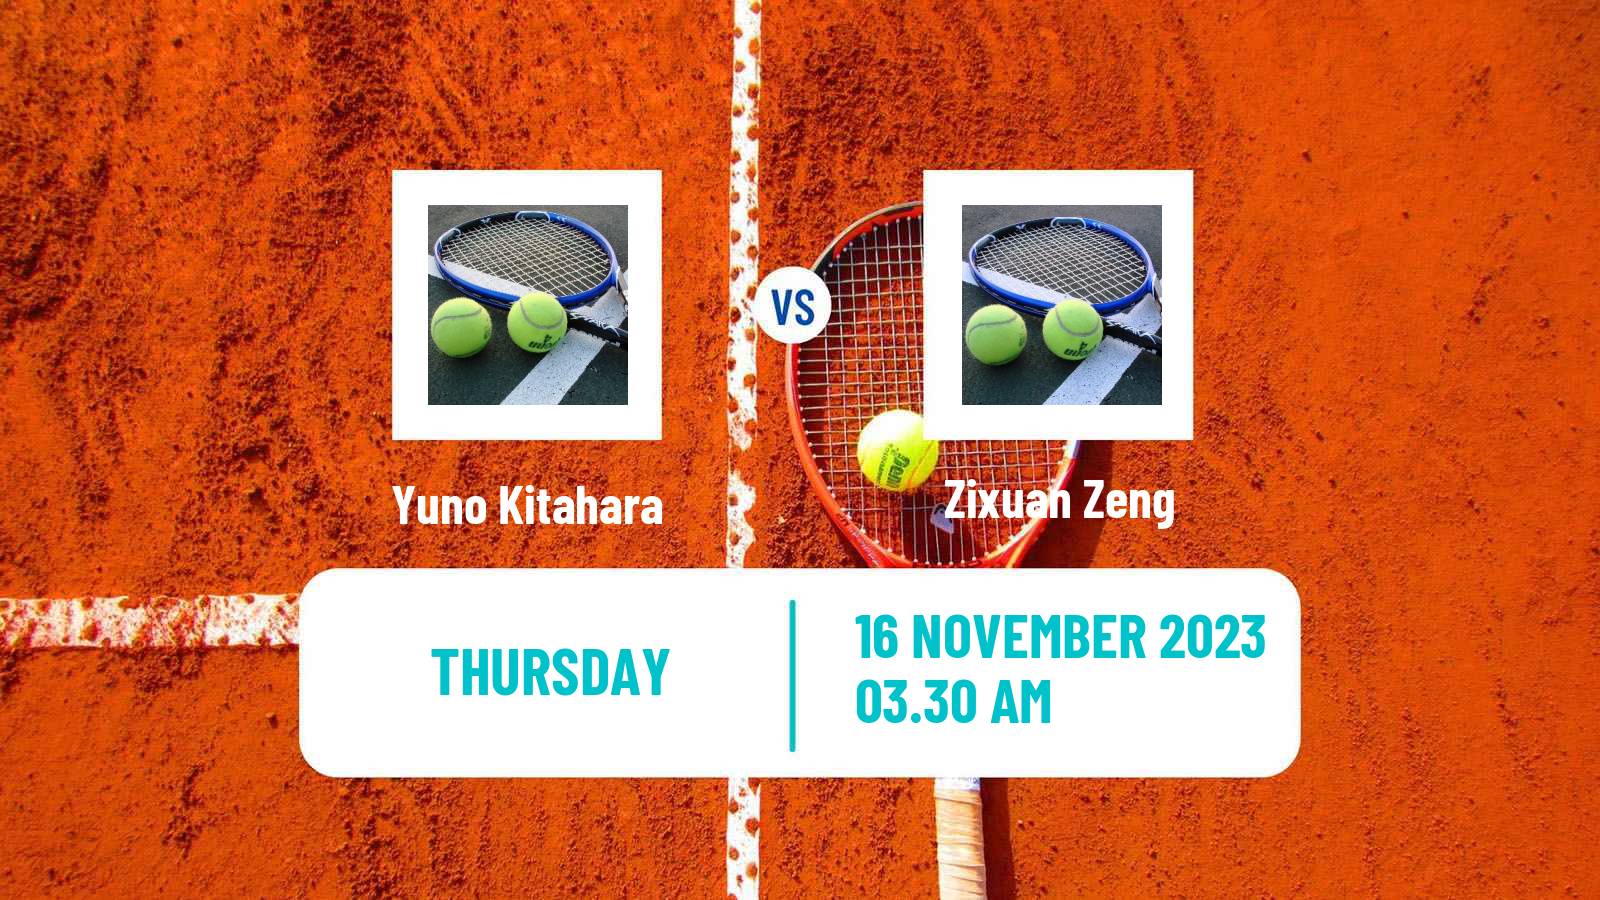 Tennis ITF W15 Monastir 40 Women Yuno Kitahara - Zixuan Zeng